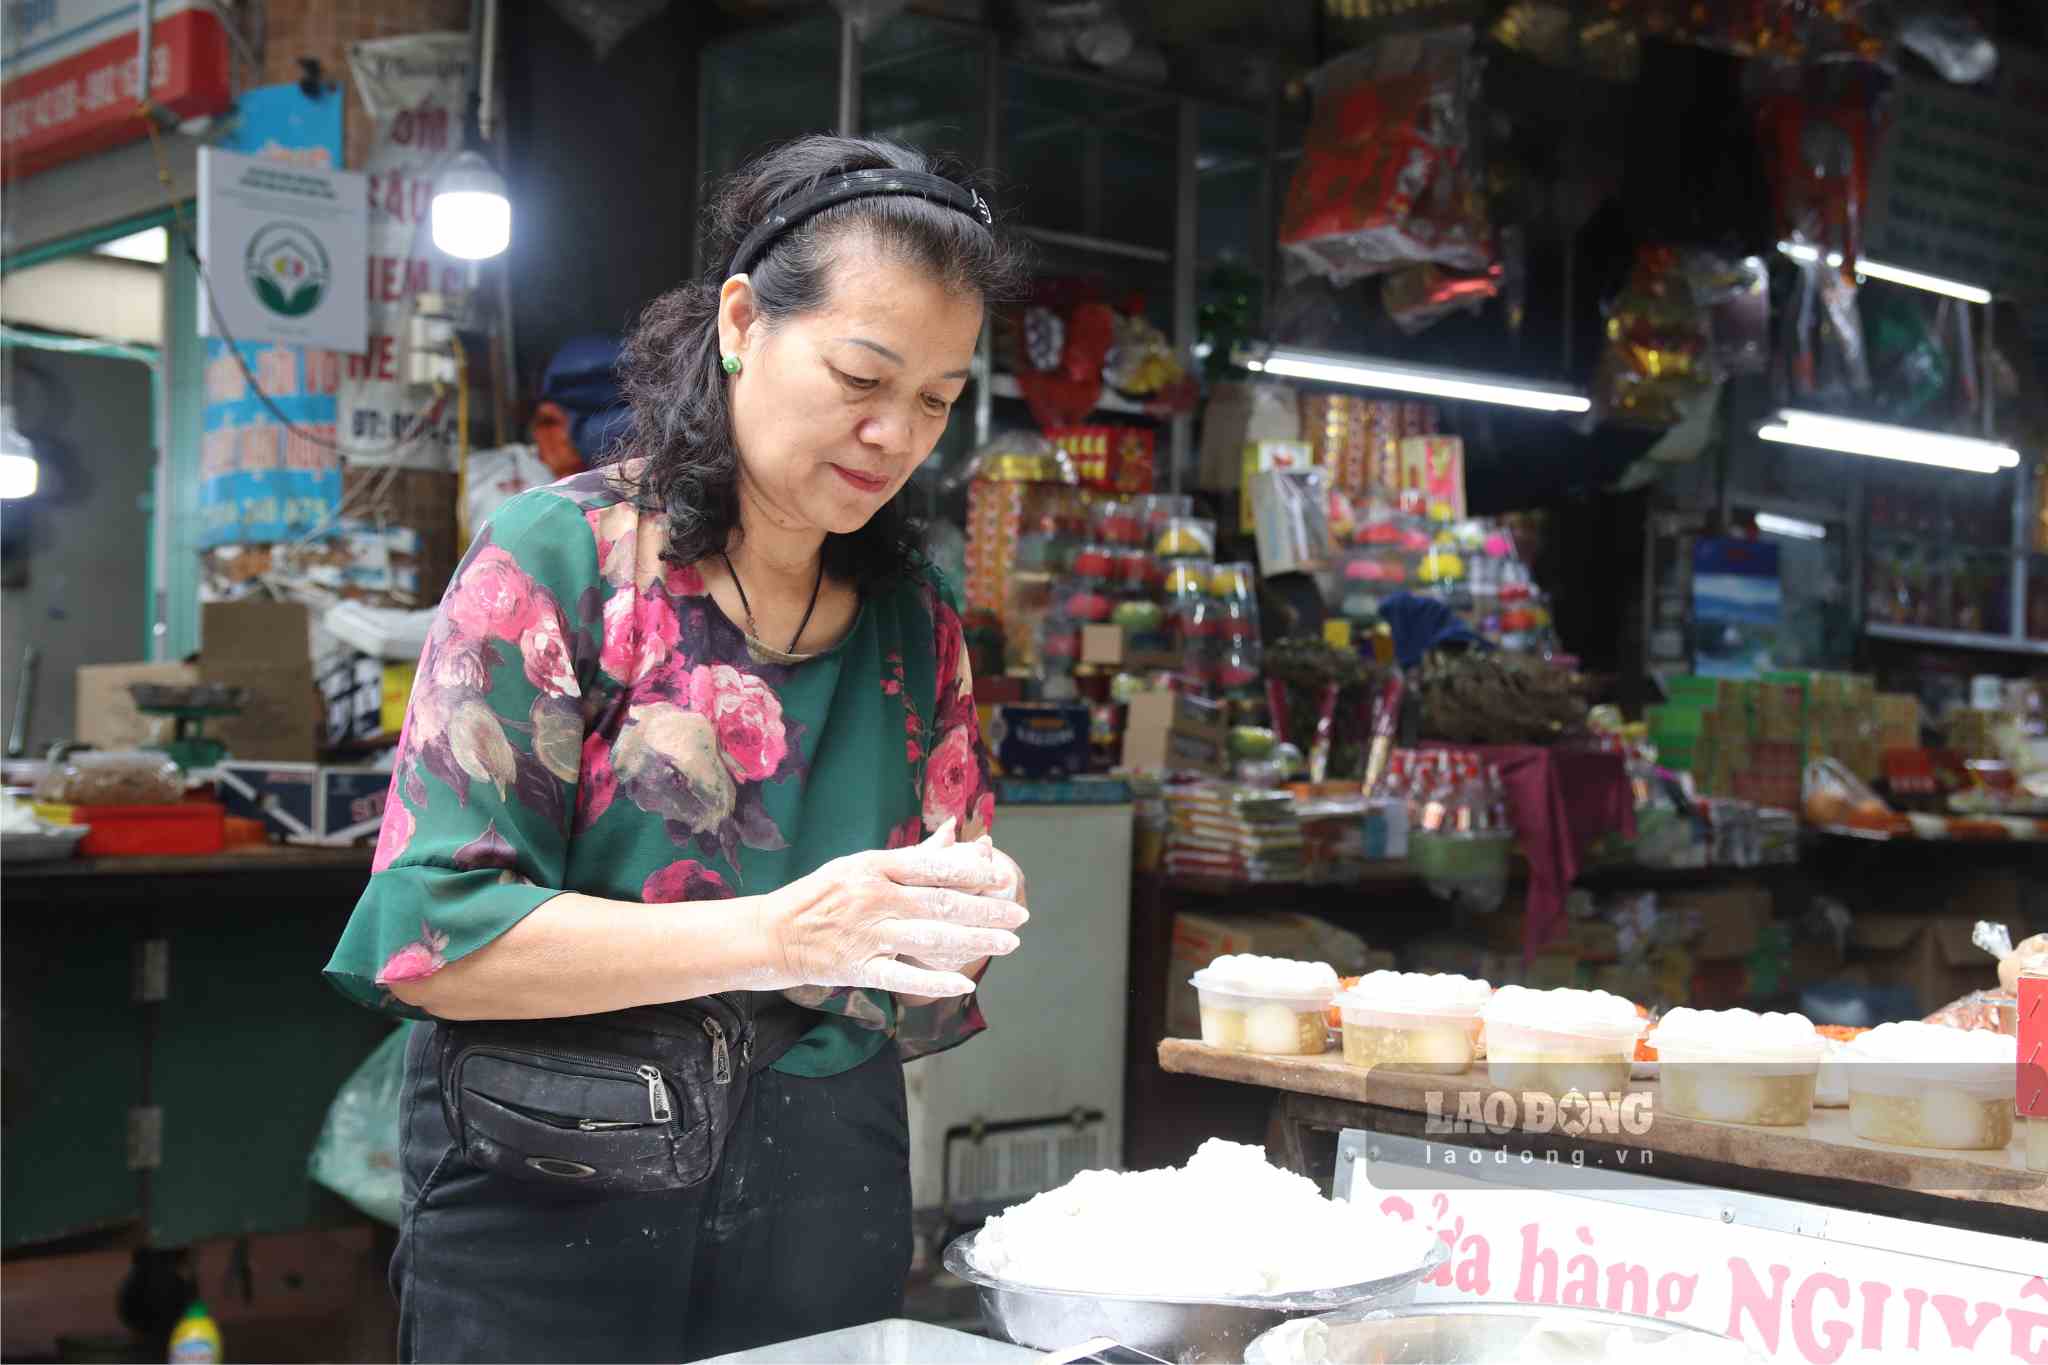 Bà Nguyễn Thị Ánh Nguyệt (tiểu thương chợ Hôm, Hoàn Kiếm) cho biết, bà bán bột để phục vụ người dân từ hôm 1.3 âm lịch, hôm nay vì nhu cầu của người dân tăng cao nên bà và các thành viên trong gia đình đã nặn thêm các sét bánh chín, người dân mua về có thể sử dụng luôn.